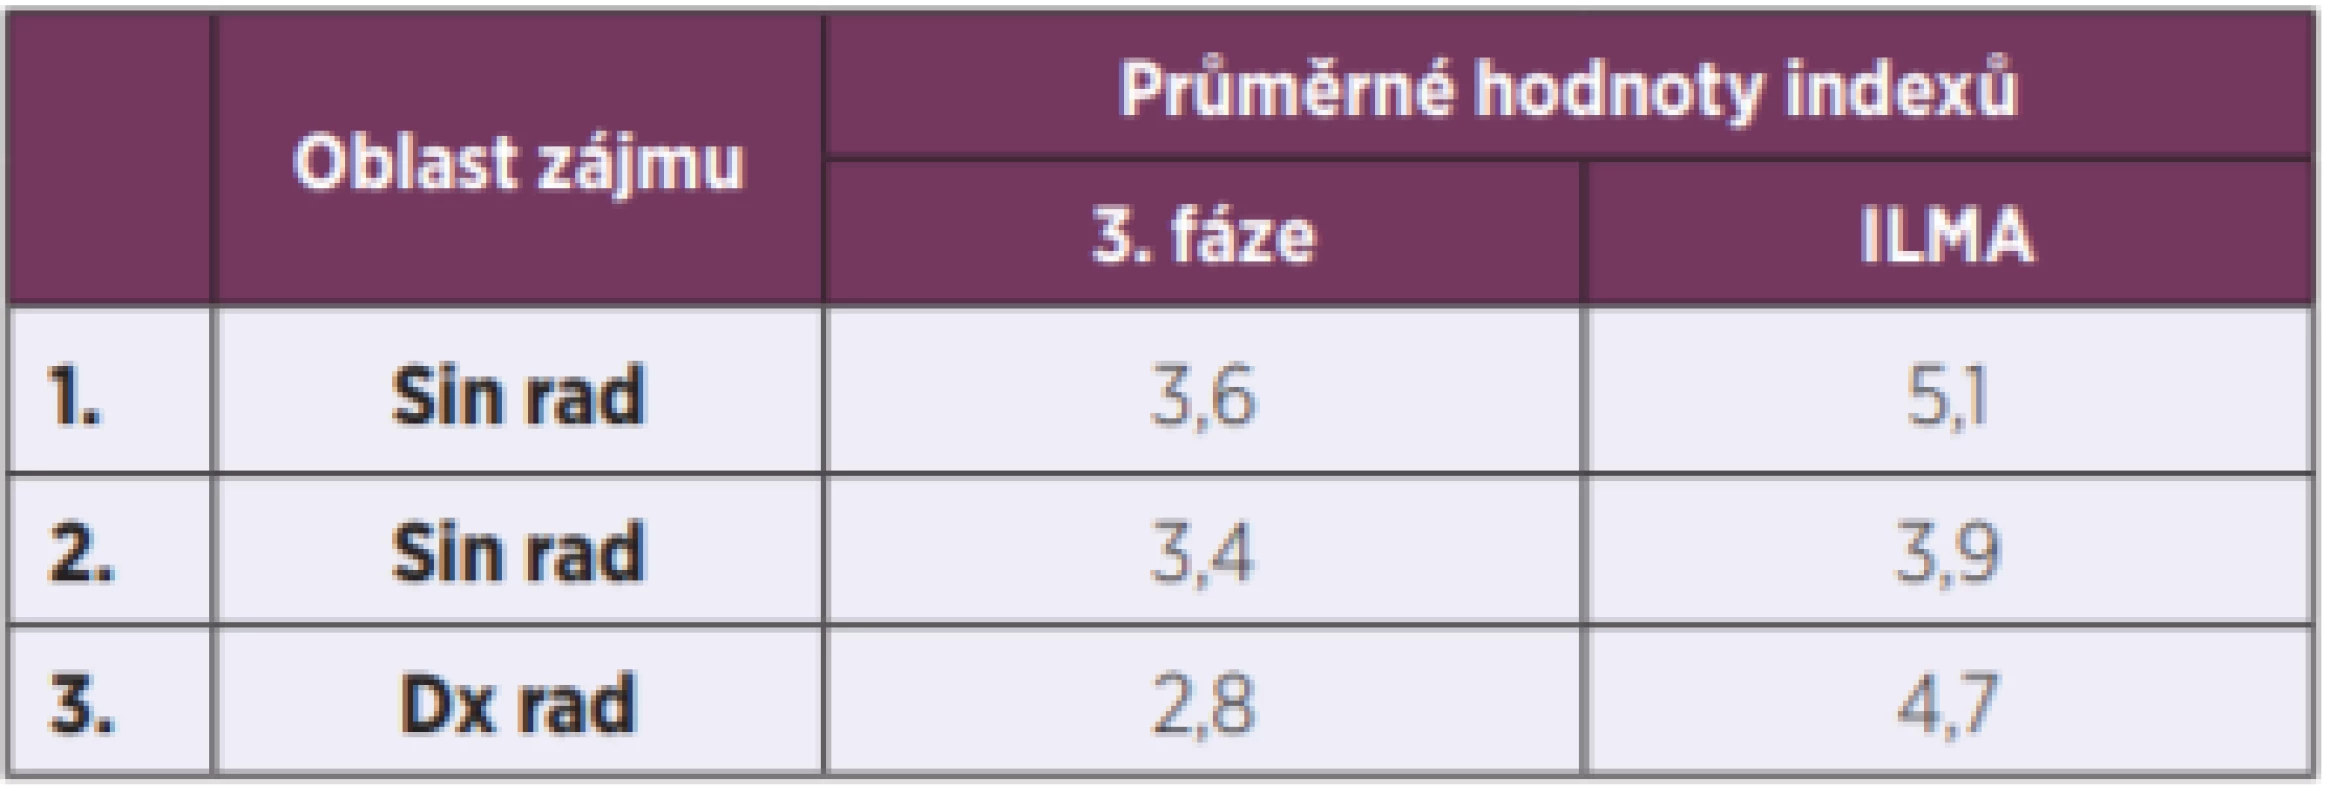 Hodnoty indexů 3. fáze a ILMA u potvrzené NZP